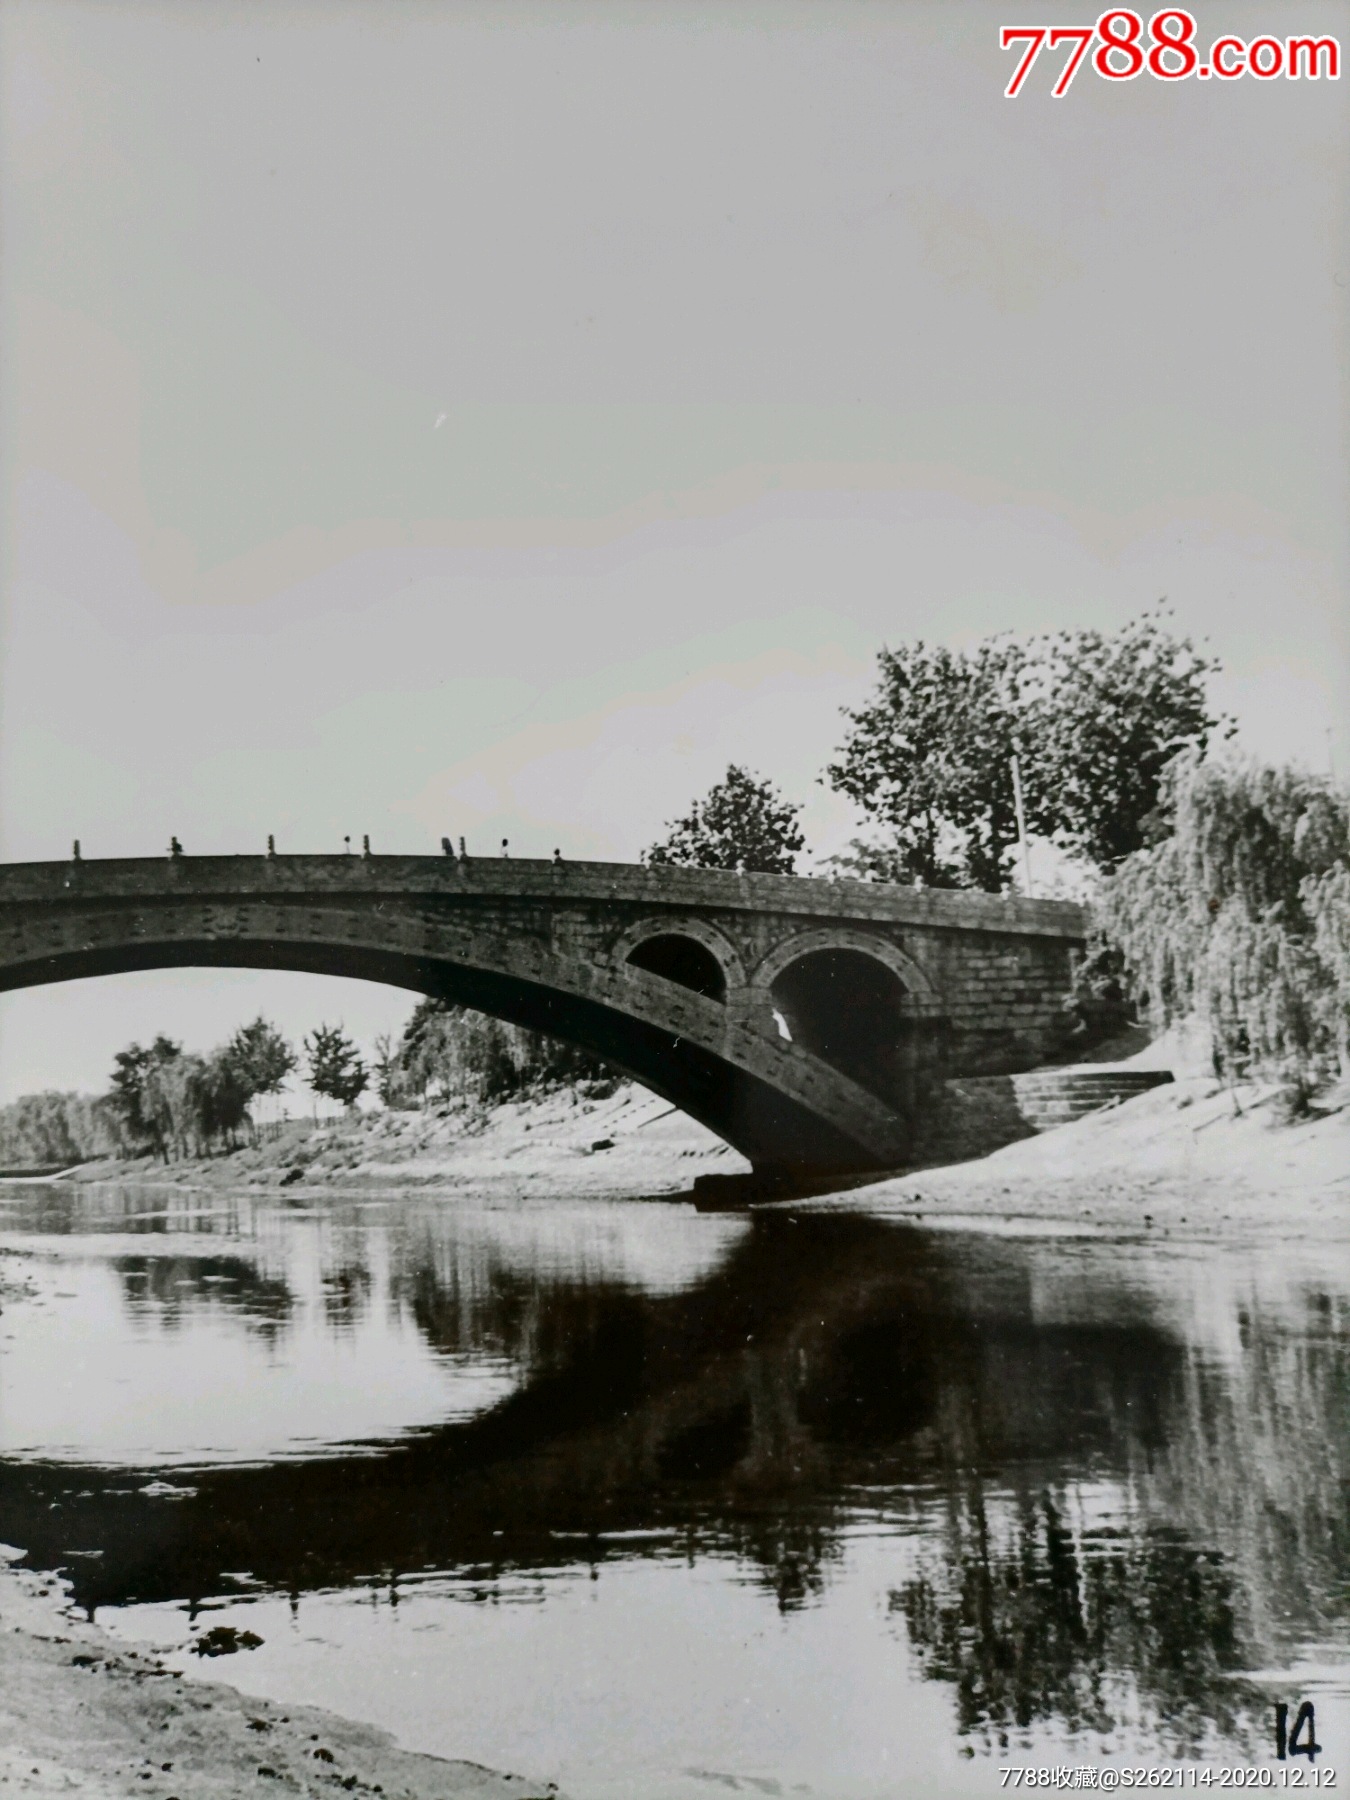 河北石家庄赵州桥老照片,大约七八十年代,馆藏保存.